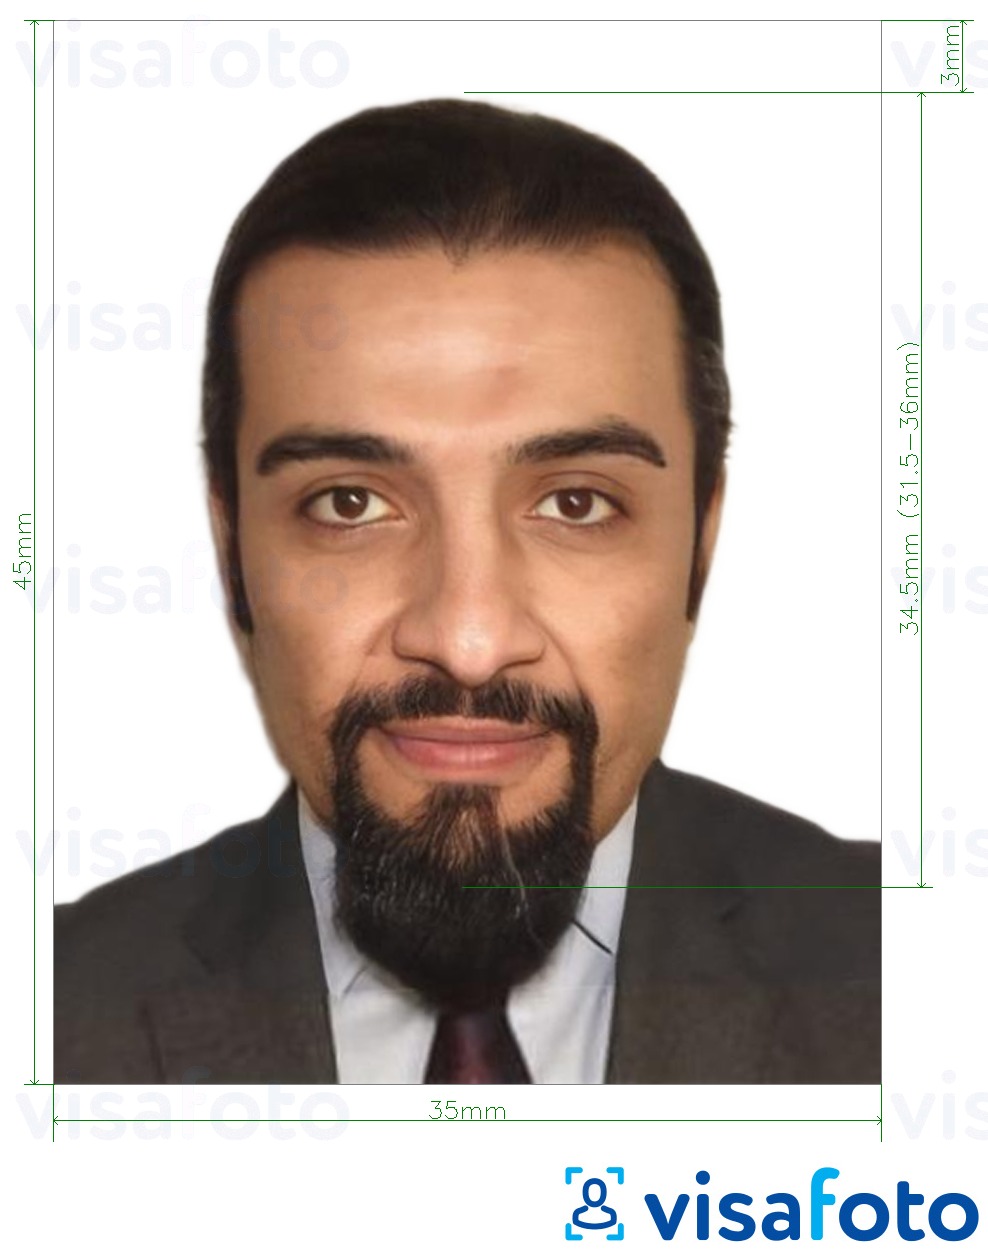 Voorbeeld van foto voor Ethiopië e-visa online 35x45 mm (3,5x4,5 cm) met exacte maatspecificatie